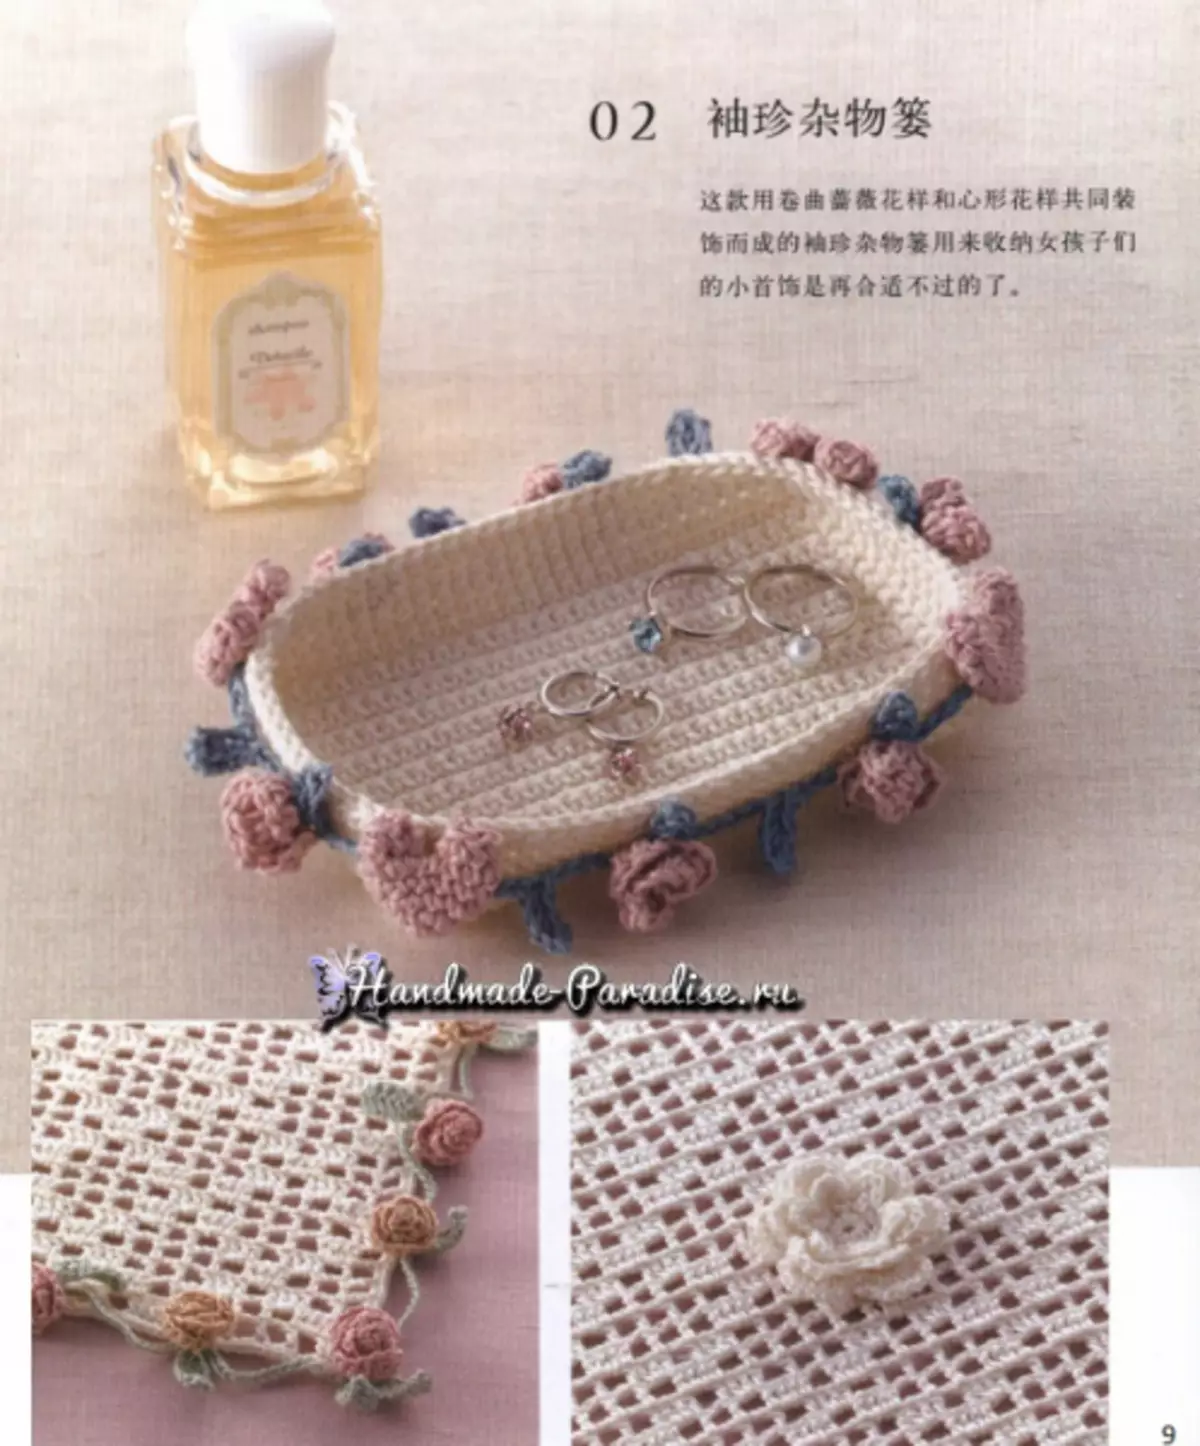 Maluwa Crochet. Magazini yaku Japan yokhala ndi mapulani